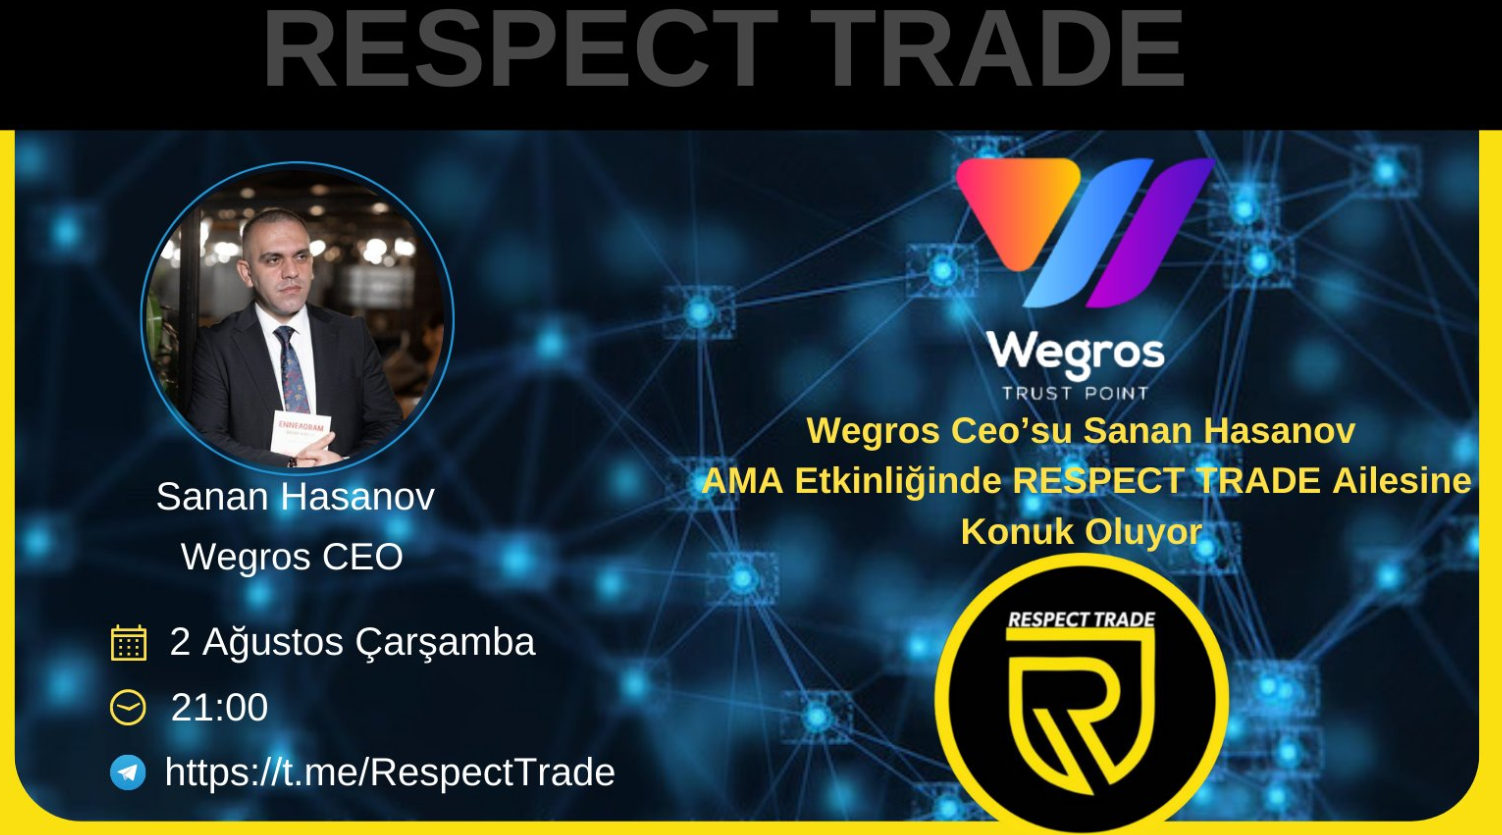 Respect Trade ile AMA etkinliğinde @Wegrosio CEO'su Sanan Hasanov'u konuk ediyoruz.